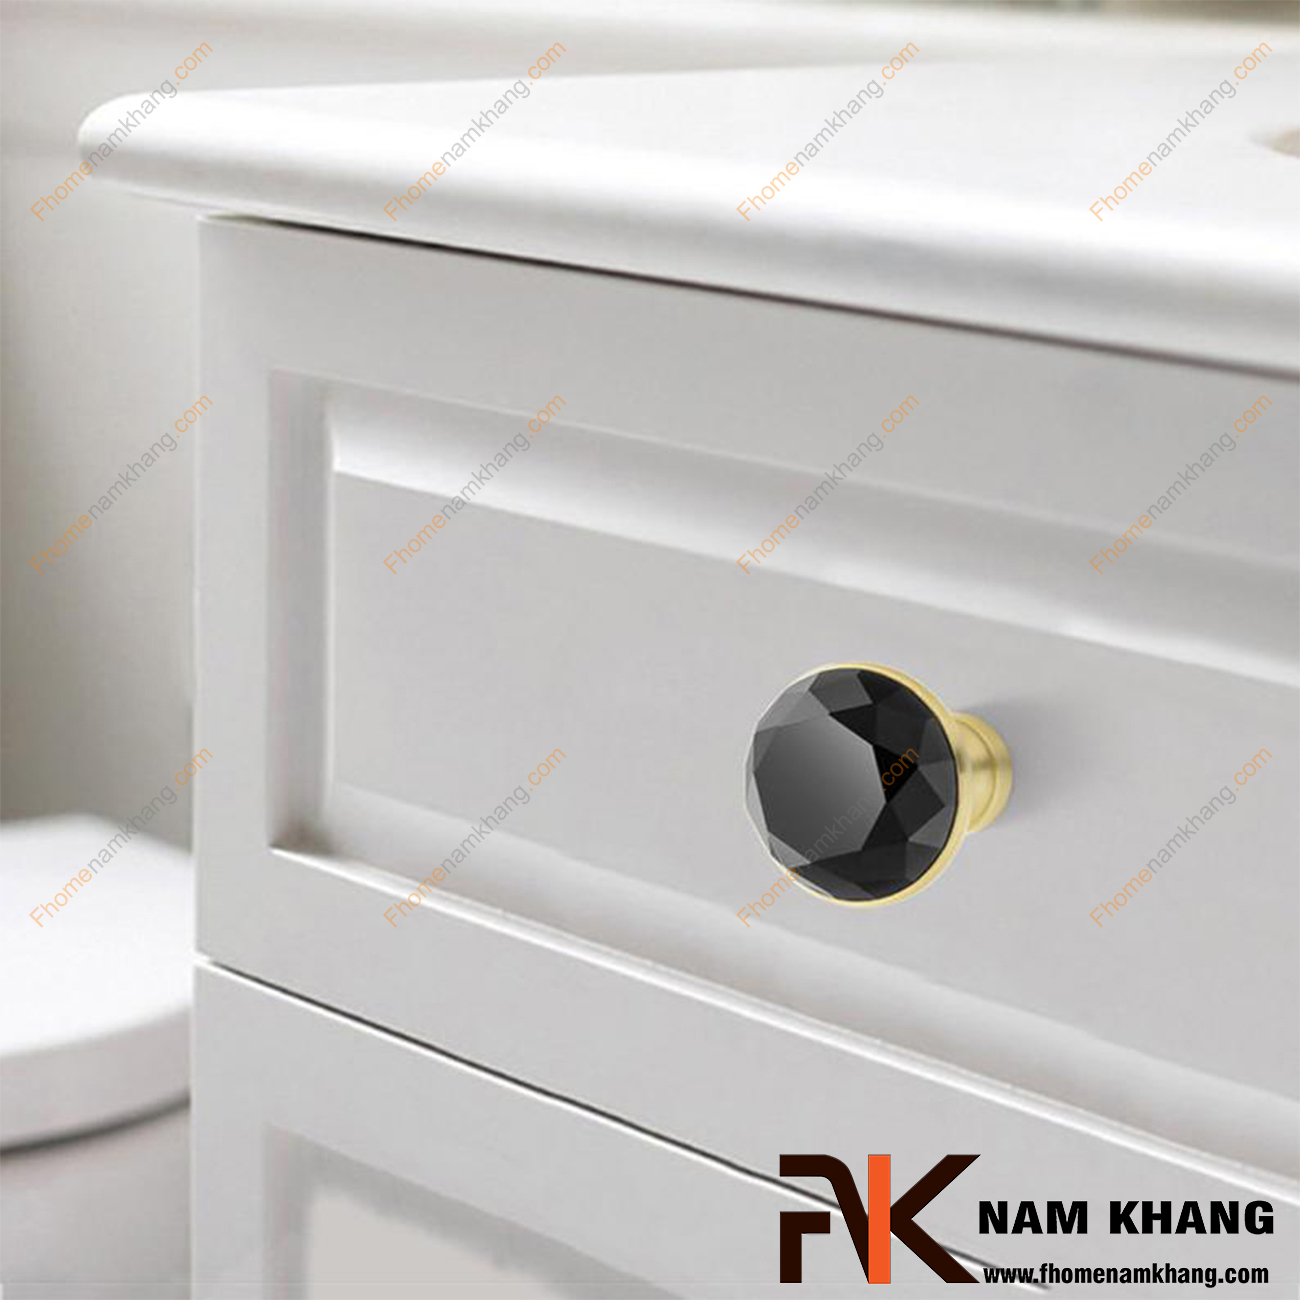 Núm cửa tủ dạng tròn phối pha lê chân đế vàng bóng NK295-DV , điểm nhấn ấn tượng trong thiết kế nội ngoại thất. Theo phong thủy, pha lê là biểu tượng của những điều tốt lành, may mắn và những điều tươi đẹp